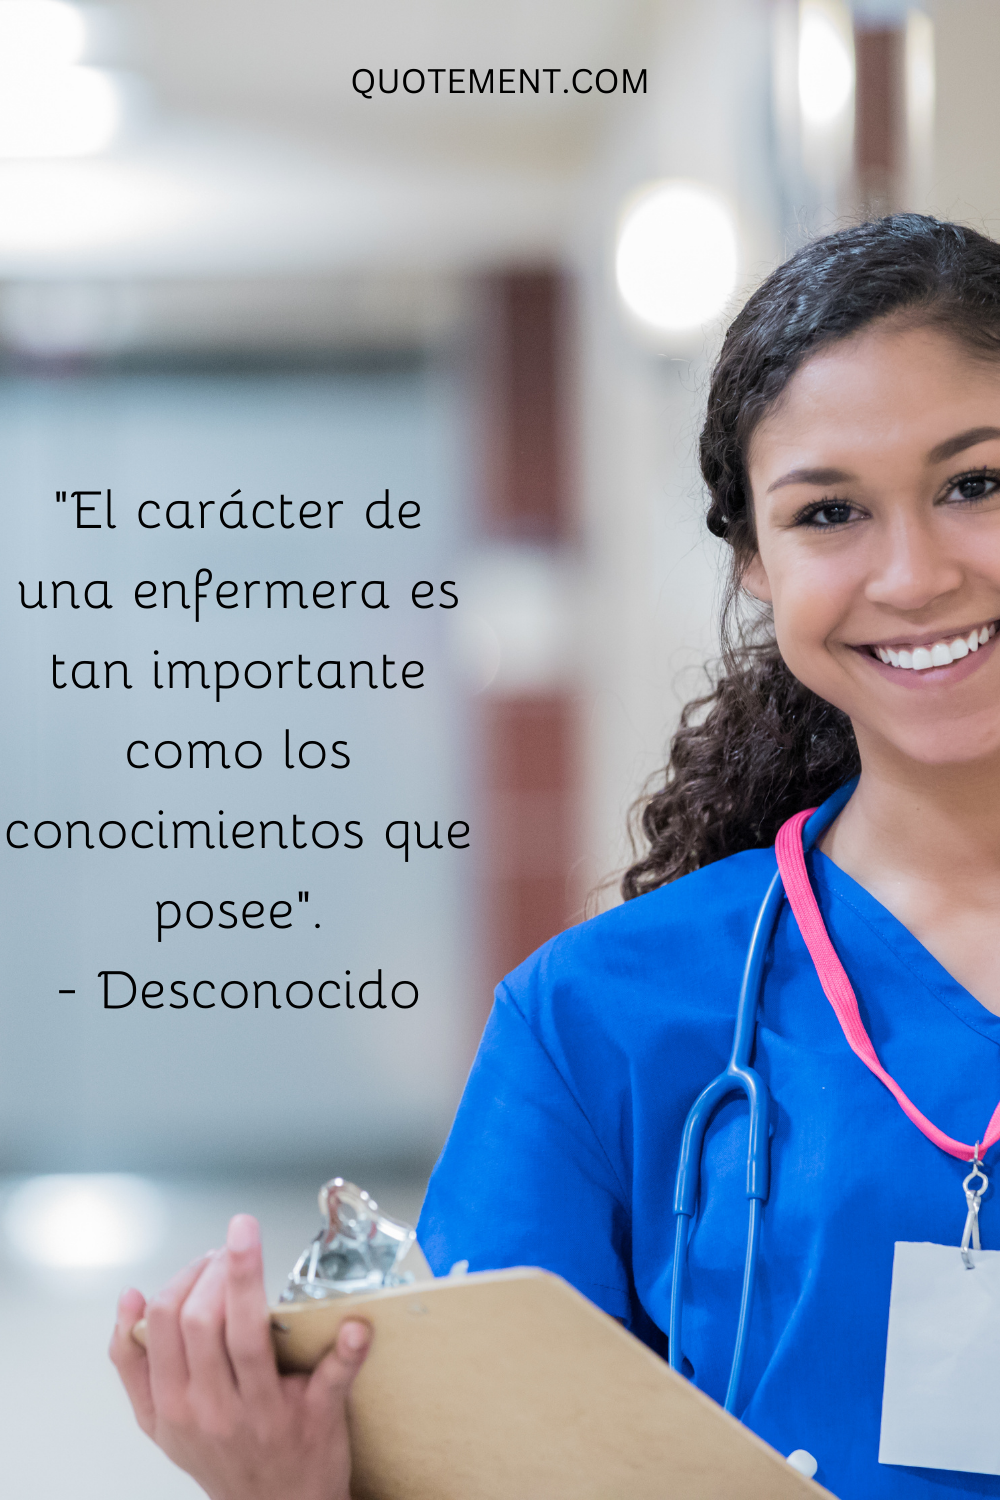 "El carácter de una enfermera es tan importante como los conocimientos que posee". - Desconocido